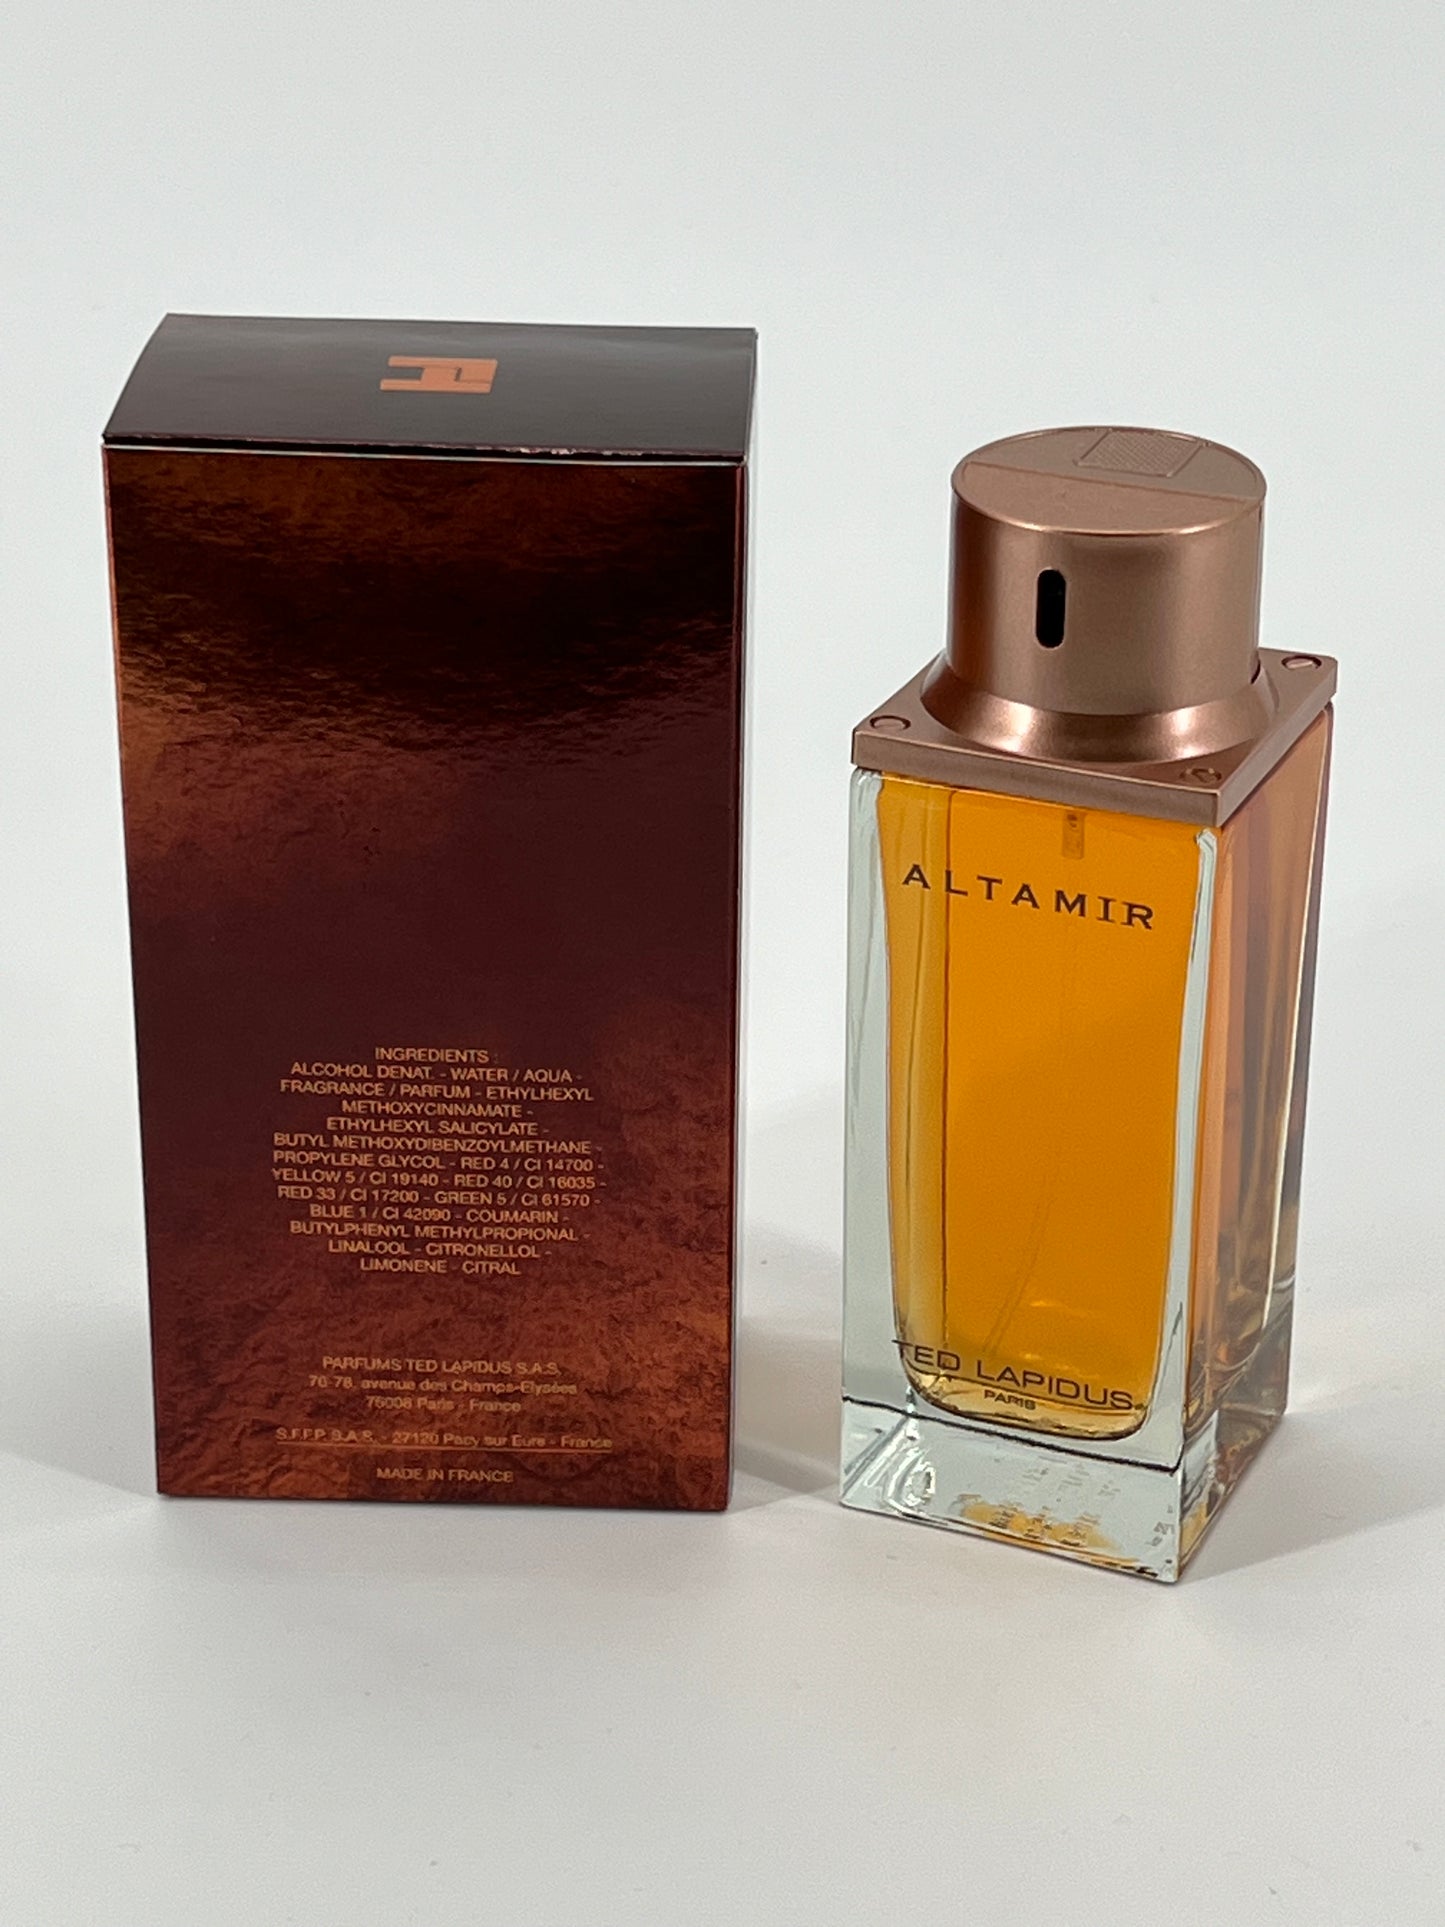 TED LAPIDUS - Parfum altamir